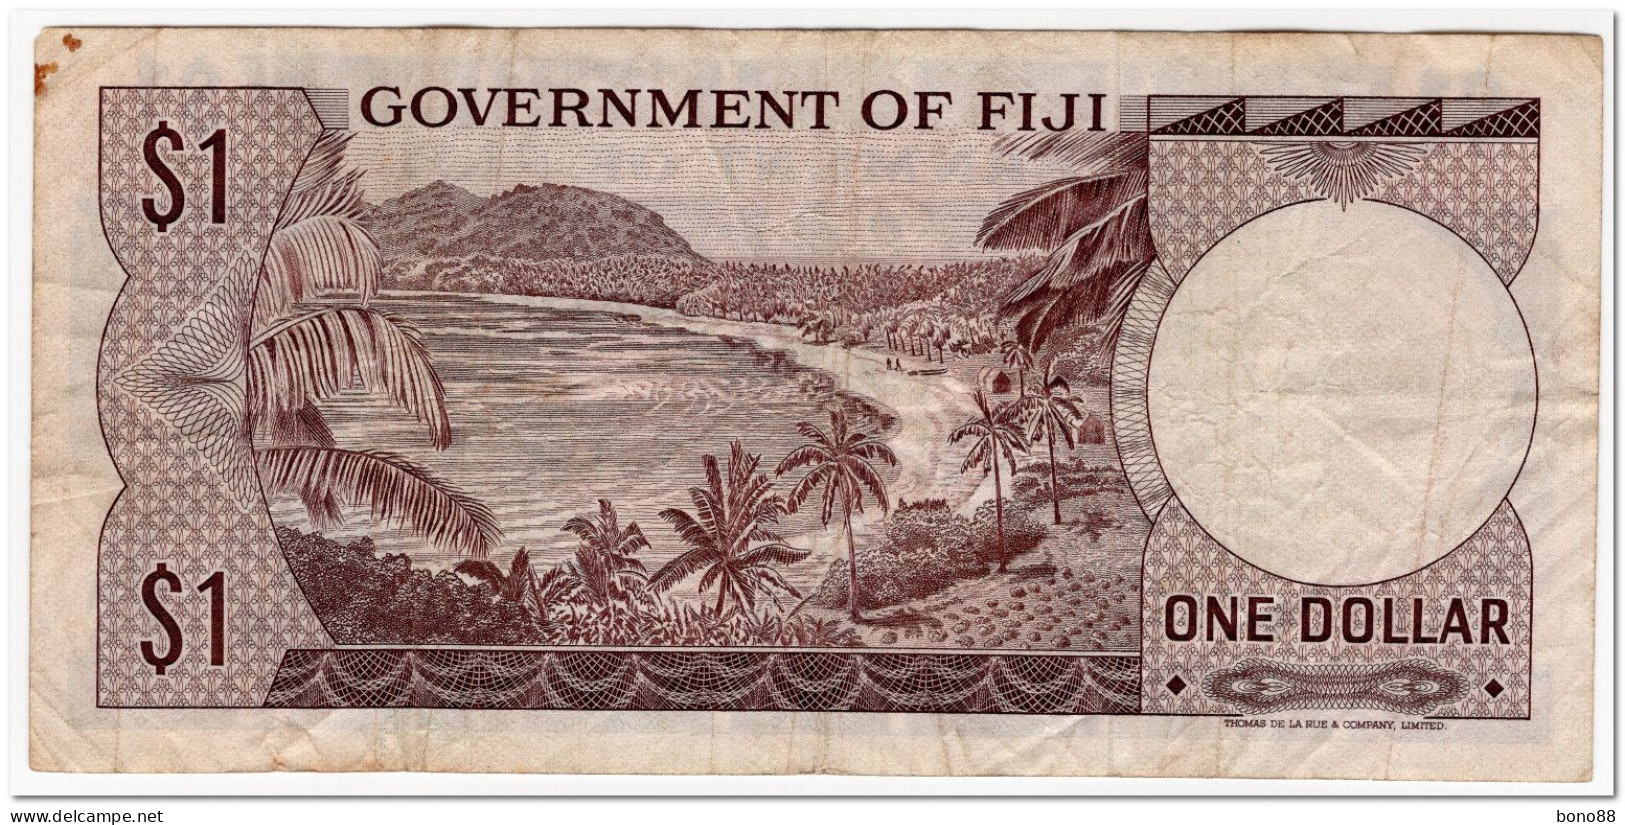 FIJI,1 DOLLAR,1969,P.59,F-VF - Fidji